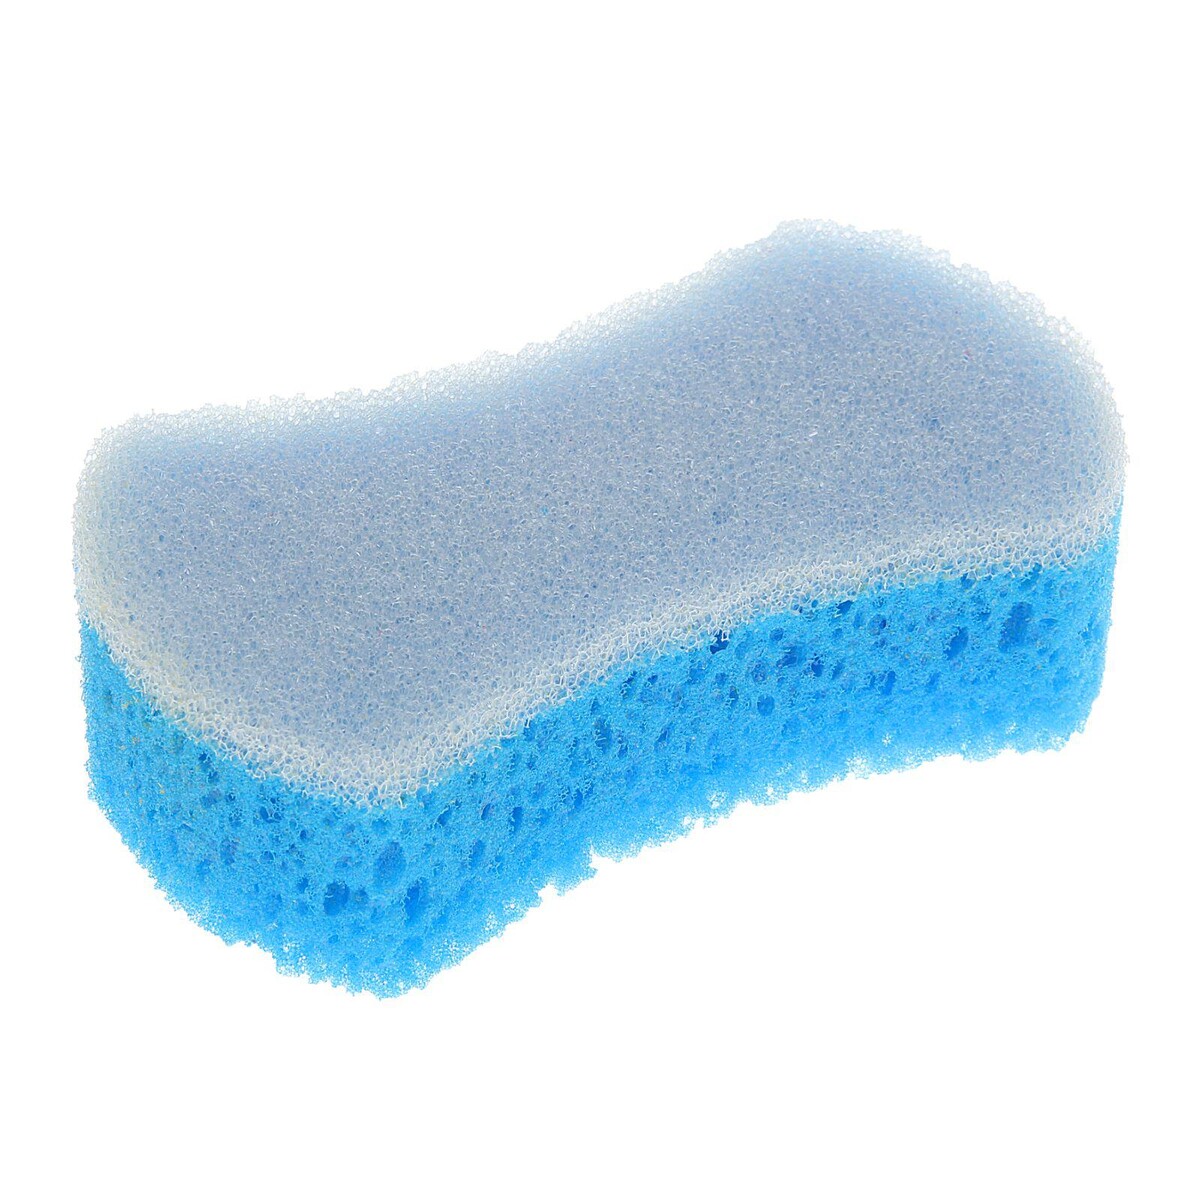 Купить губку для мытья автомобиля. Губка Королева чистоты массажная двухслойная 180 110 53 50уп/меш. Губка для мойки а/м abro (16x8x6 см) auto Sponge. Губка для мойки автомобиля Sponge profile черная. Губка для мойки кузова Wash Sponge от компании Shine Systems.